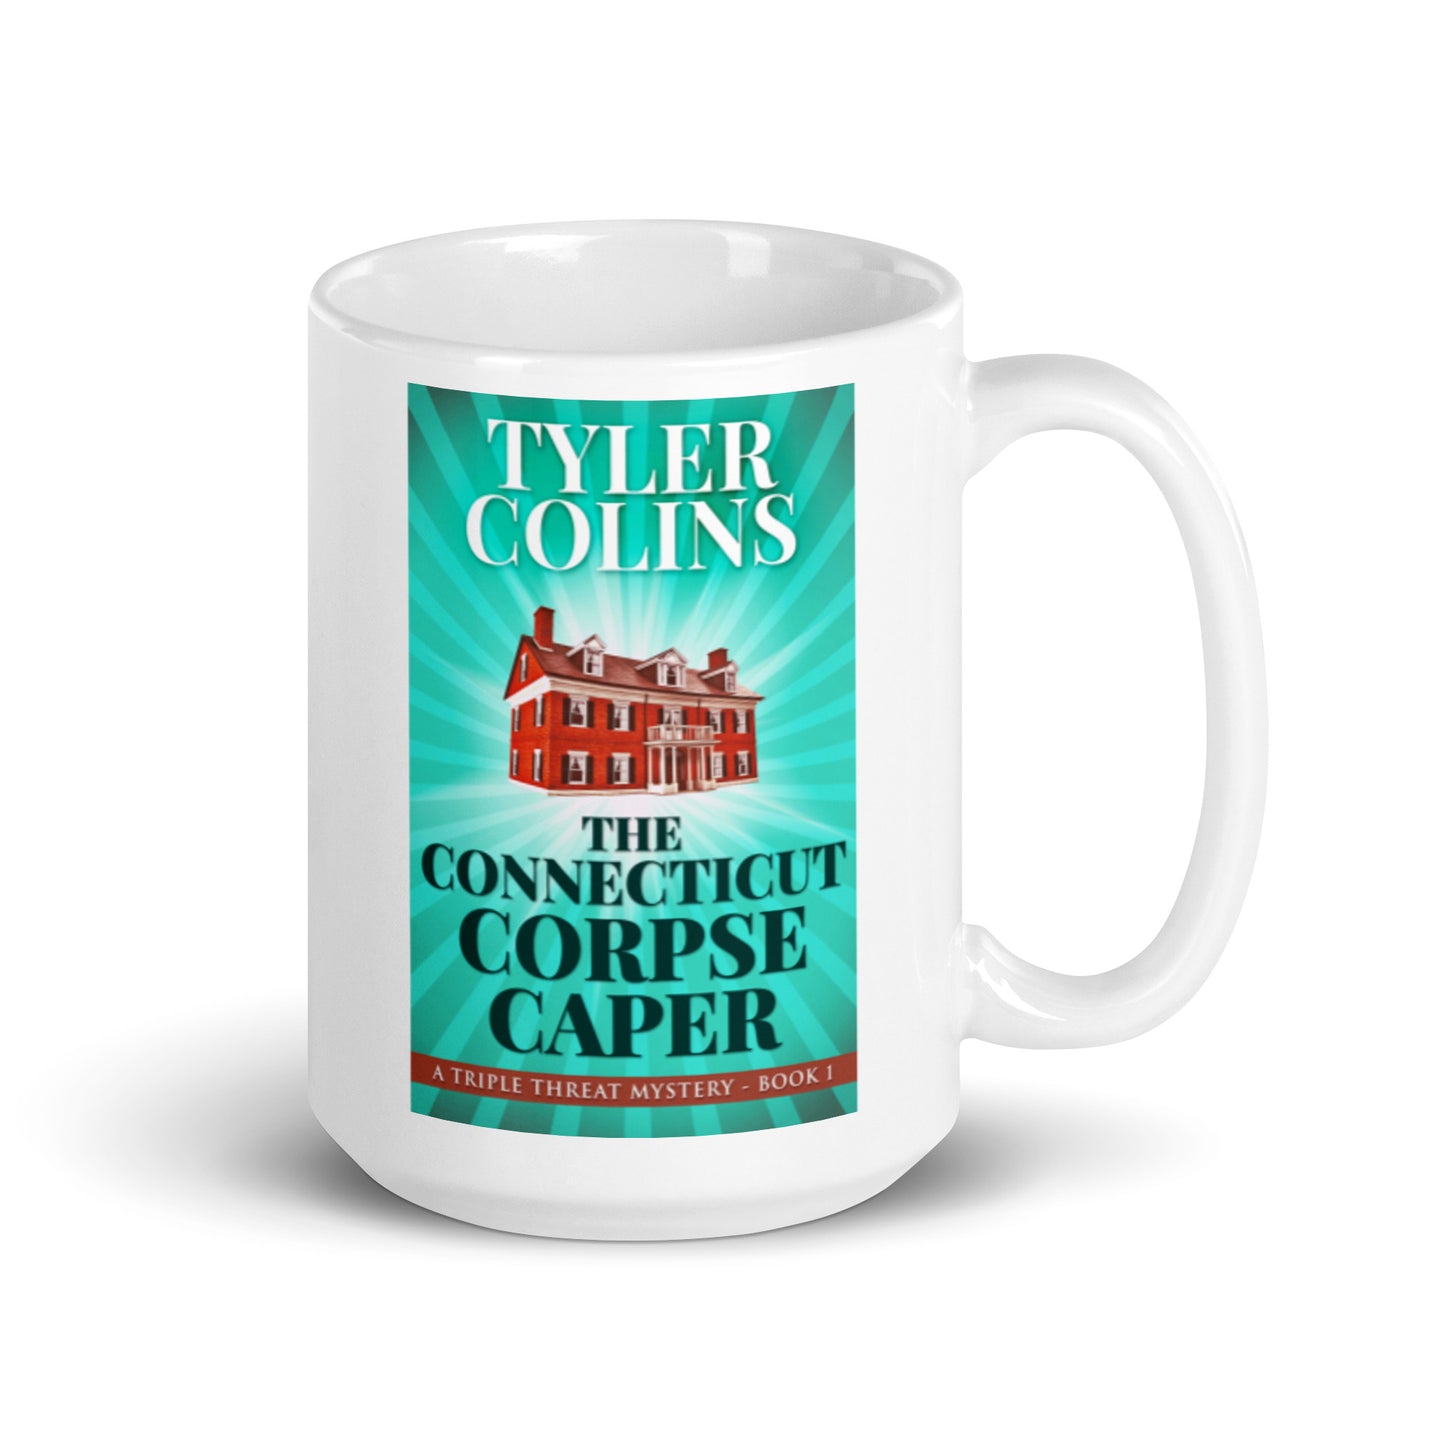 The Connecticut Corpse Caper - White Coffee Mug